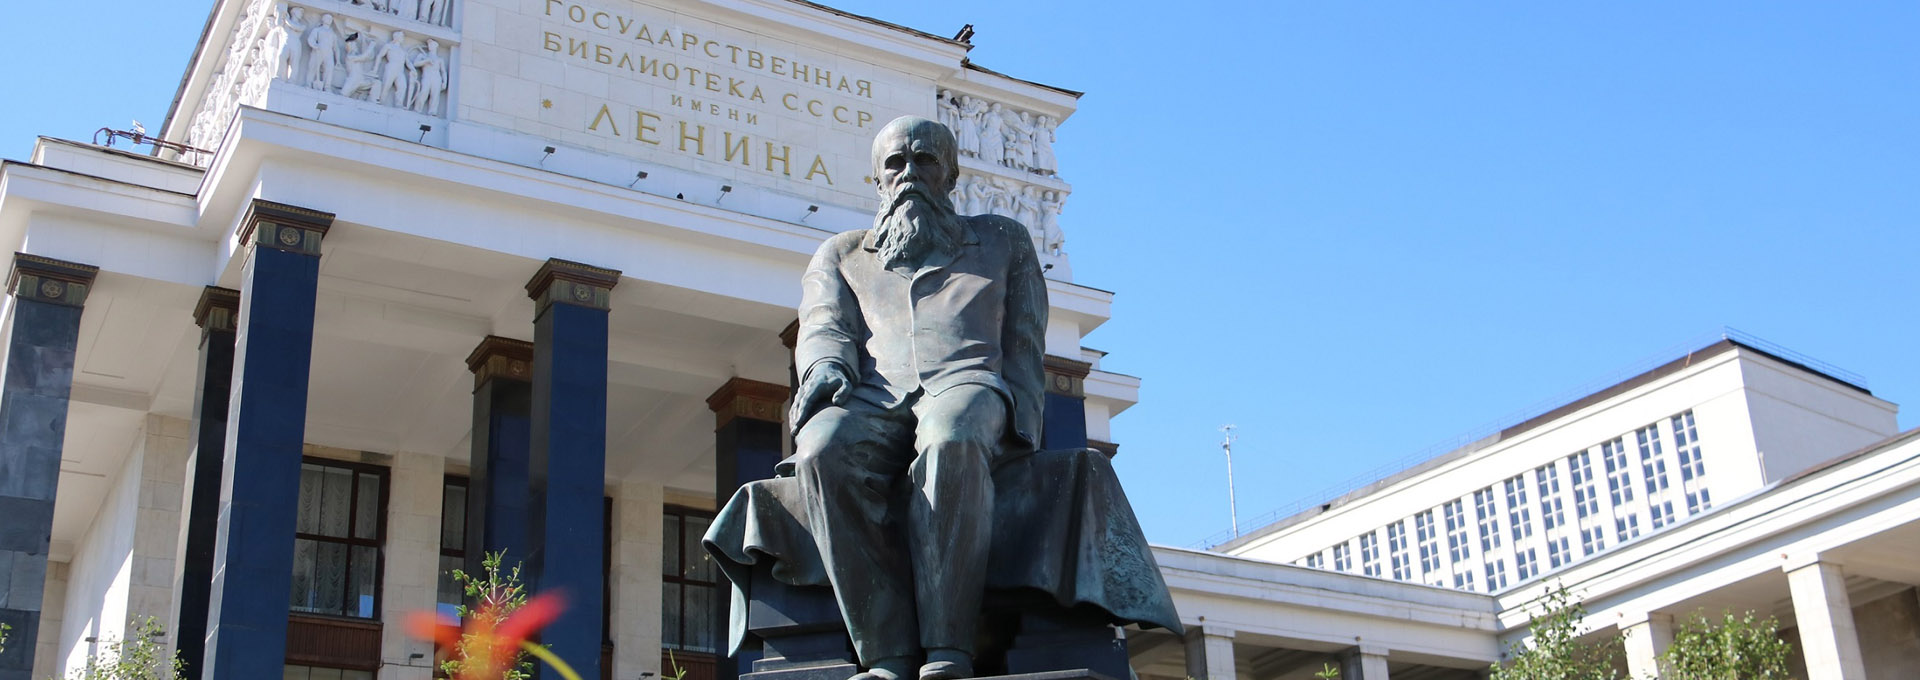 모스크바 국립레닌도서관 도스토옙스키 동상